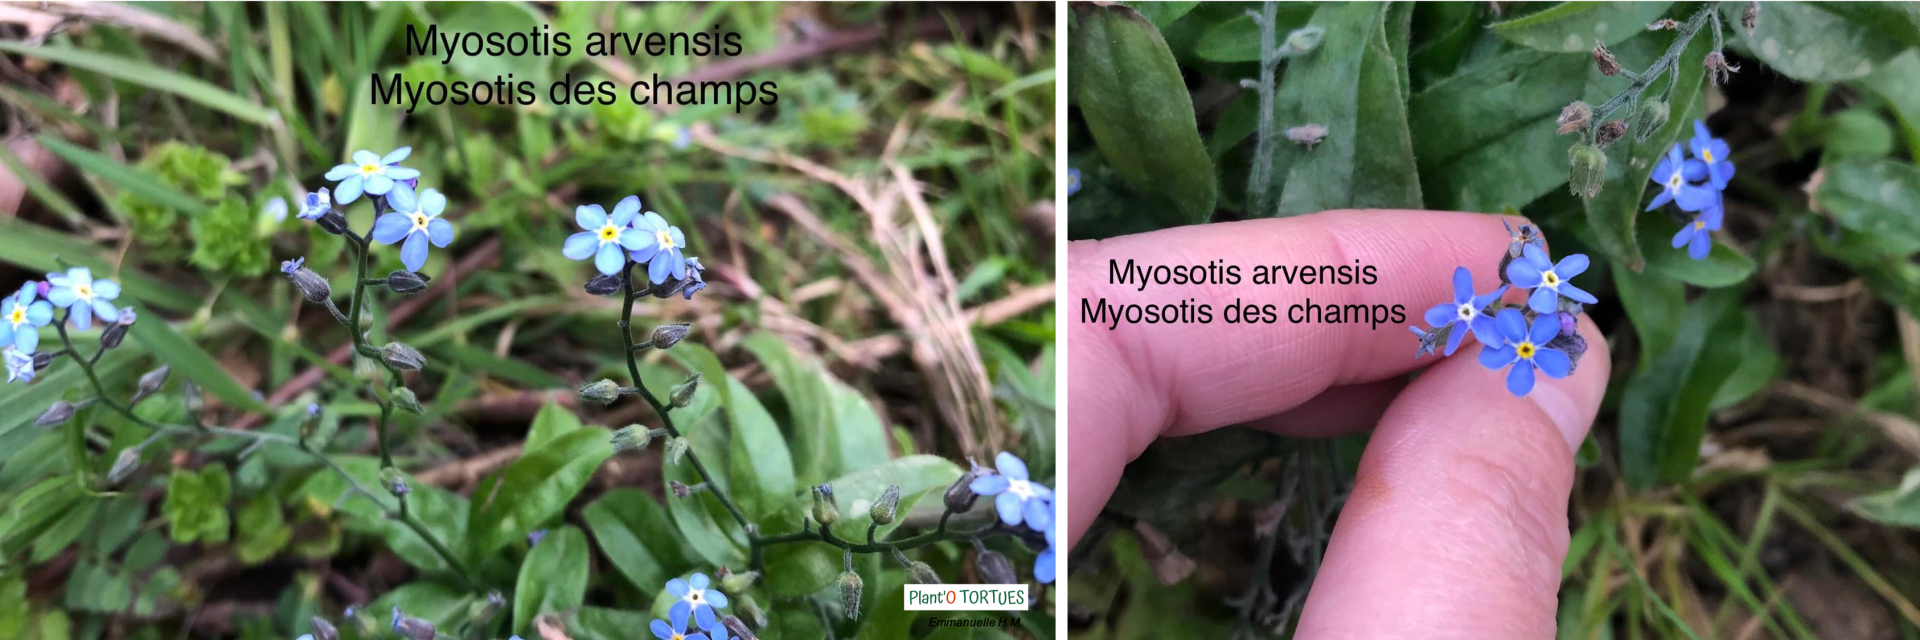 Myosotis des champs 3